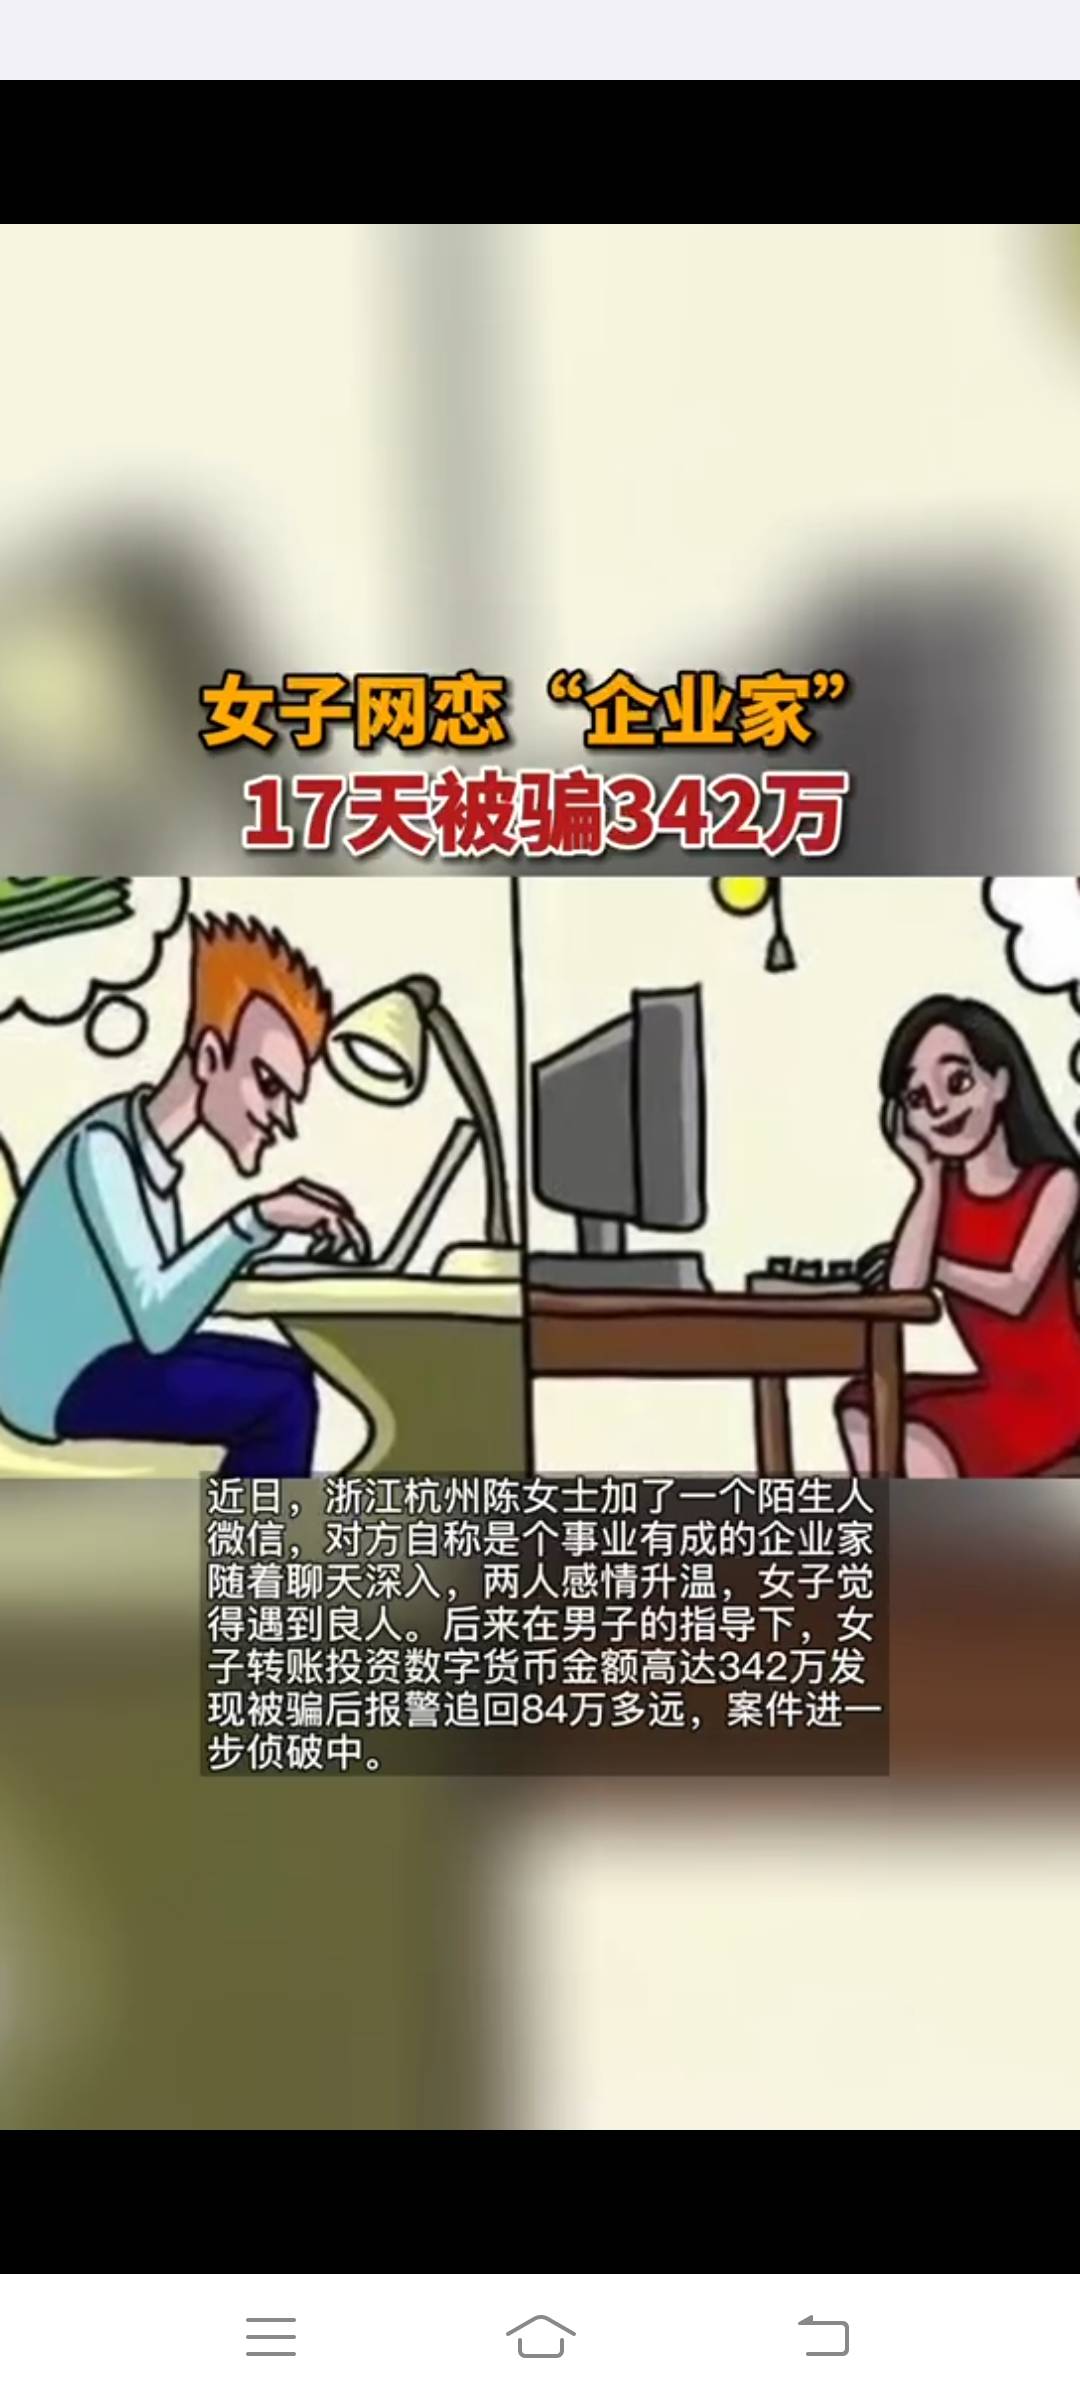 女子网恋事业有成“企业家”，17天被骗342万-搜狐大视野-搜狐新闻